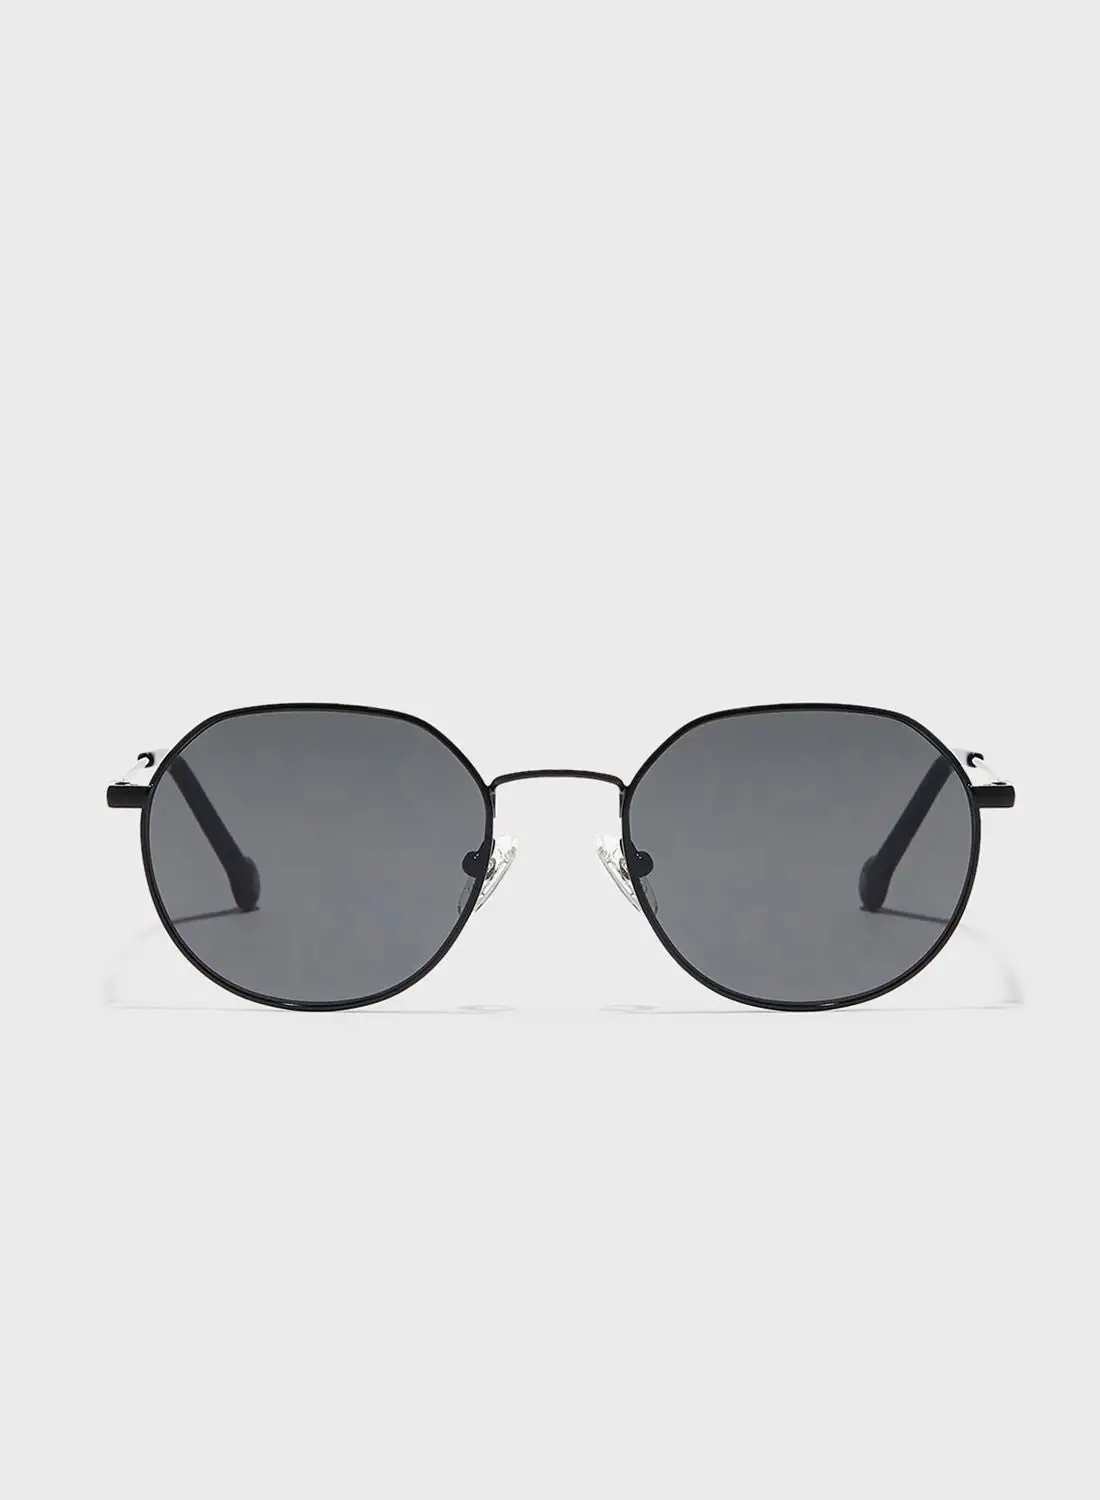 30Sundays Polarized Round Sunglasses